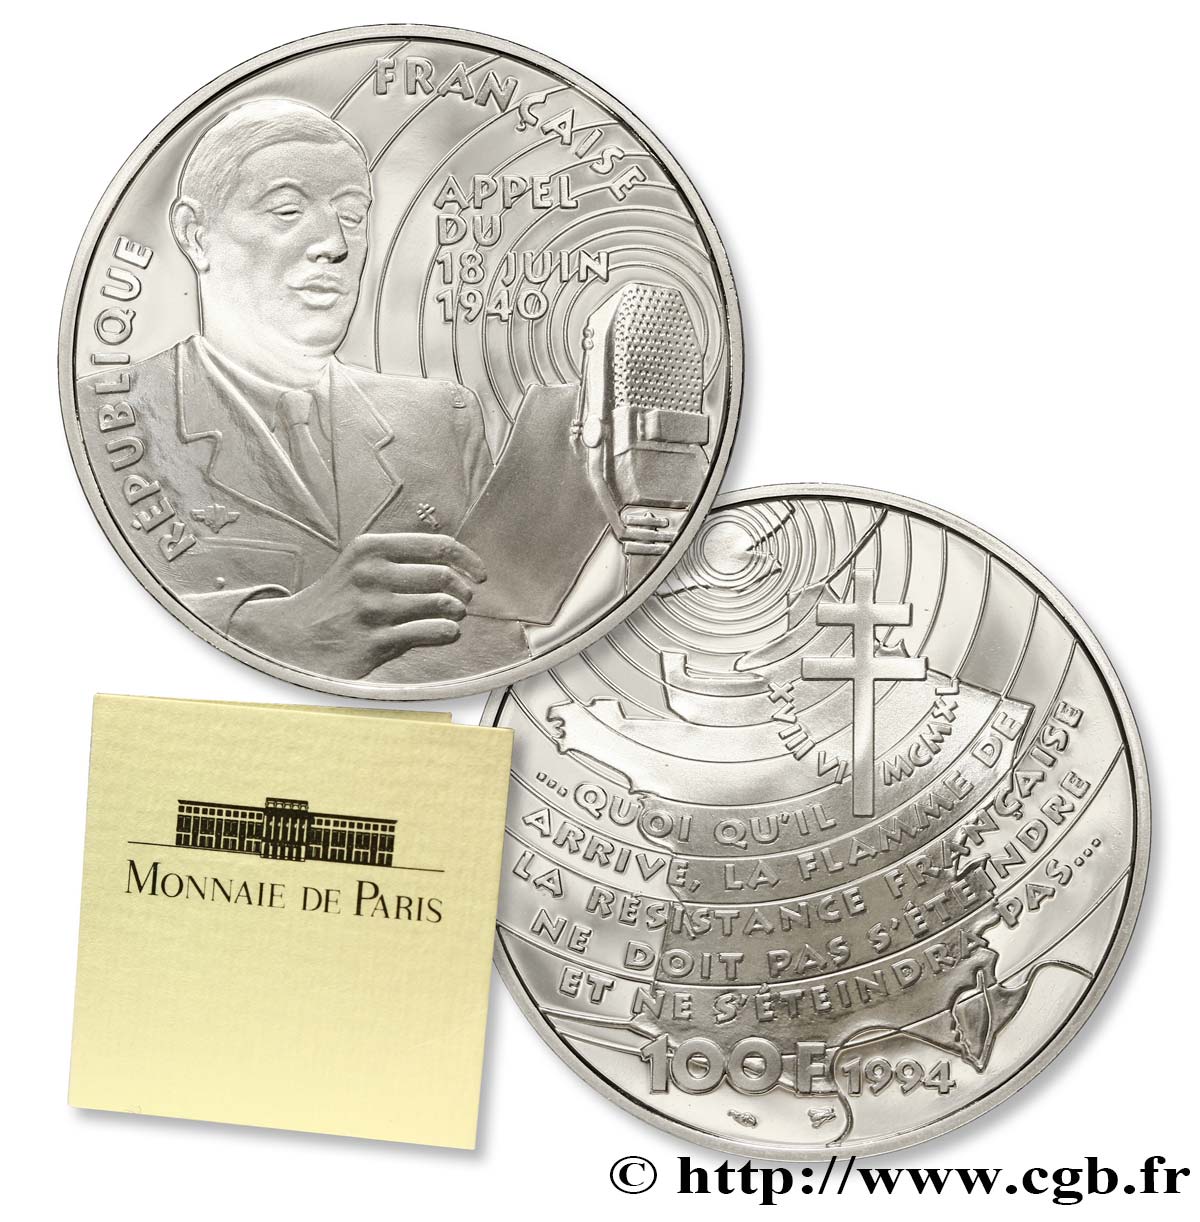 Belle Épreuve 100 francs - Appel du 18 juin 1940 1994 Paris F.1628 1 MS 